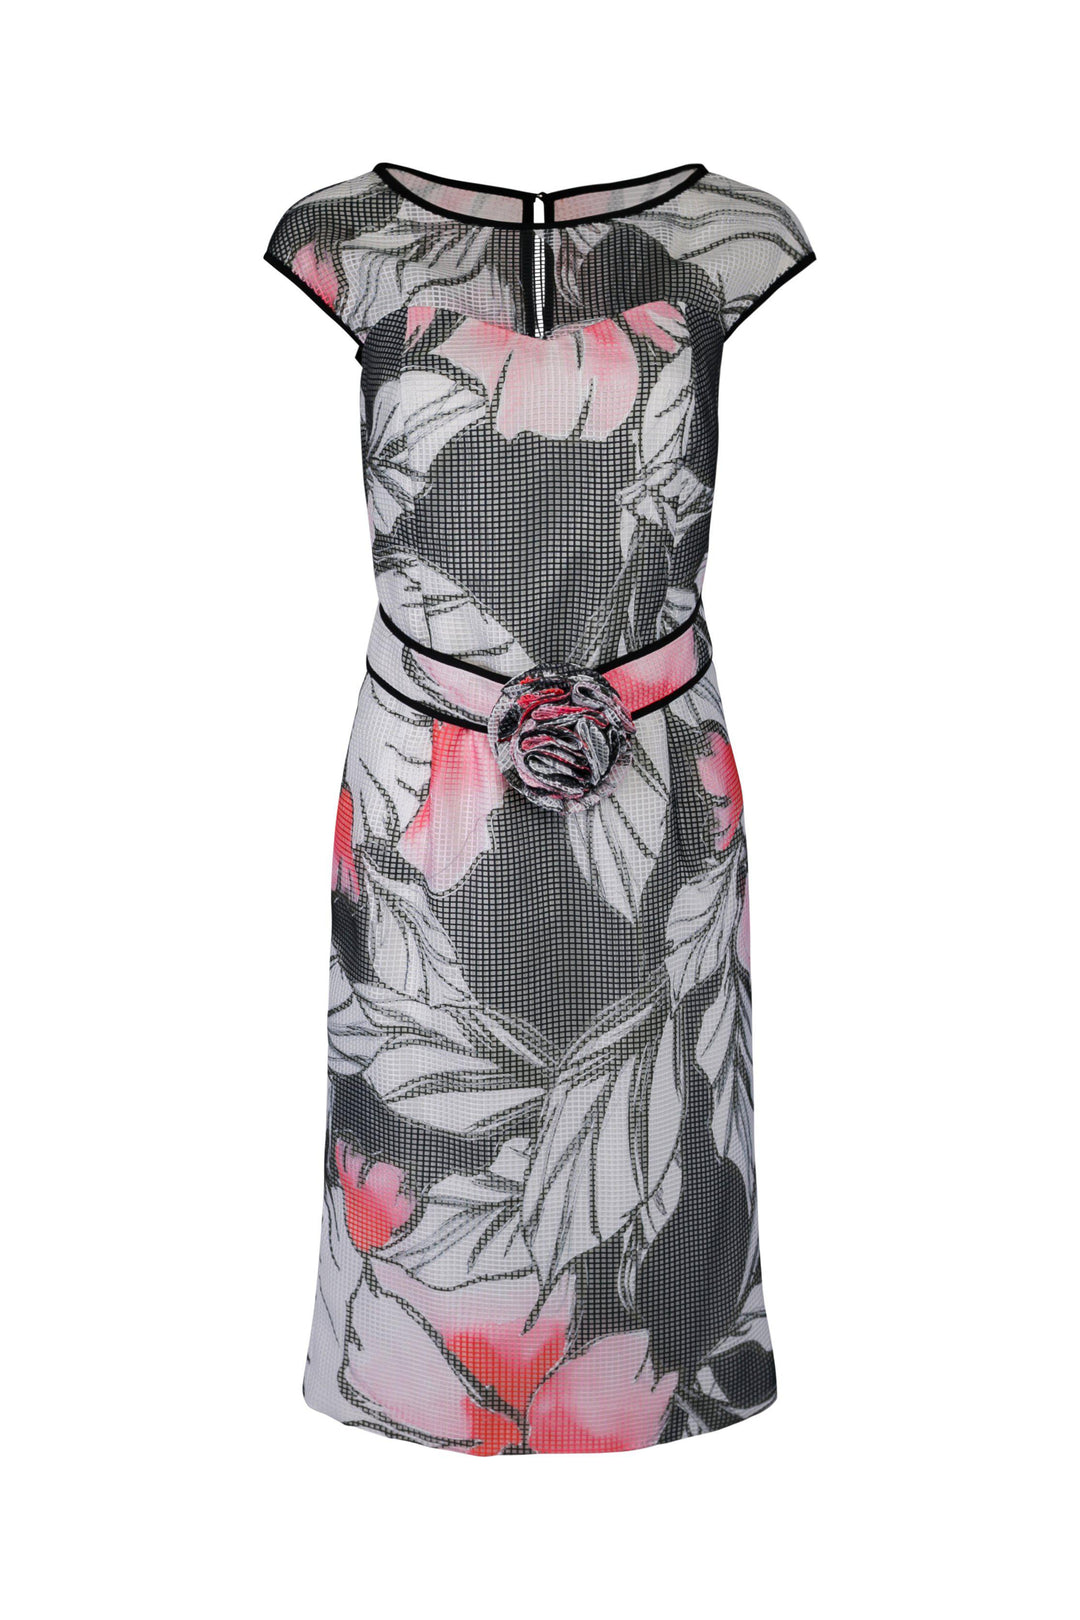 Luis Civit D839 - Charcoal print dress-Dress